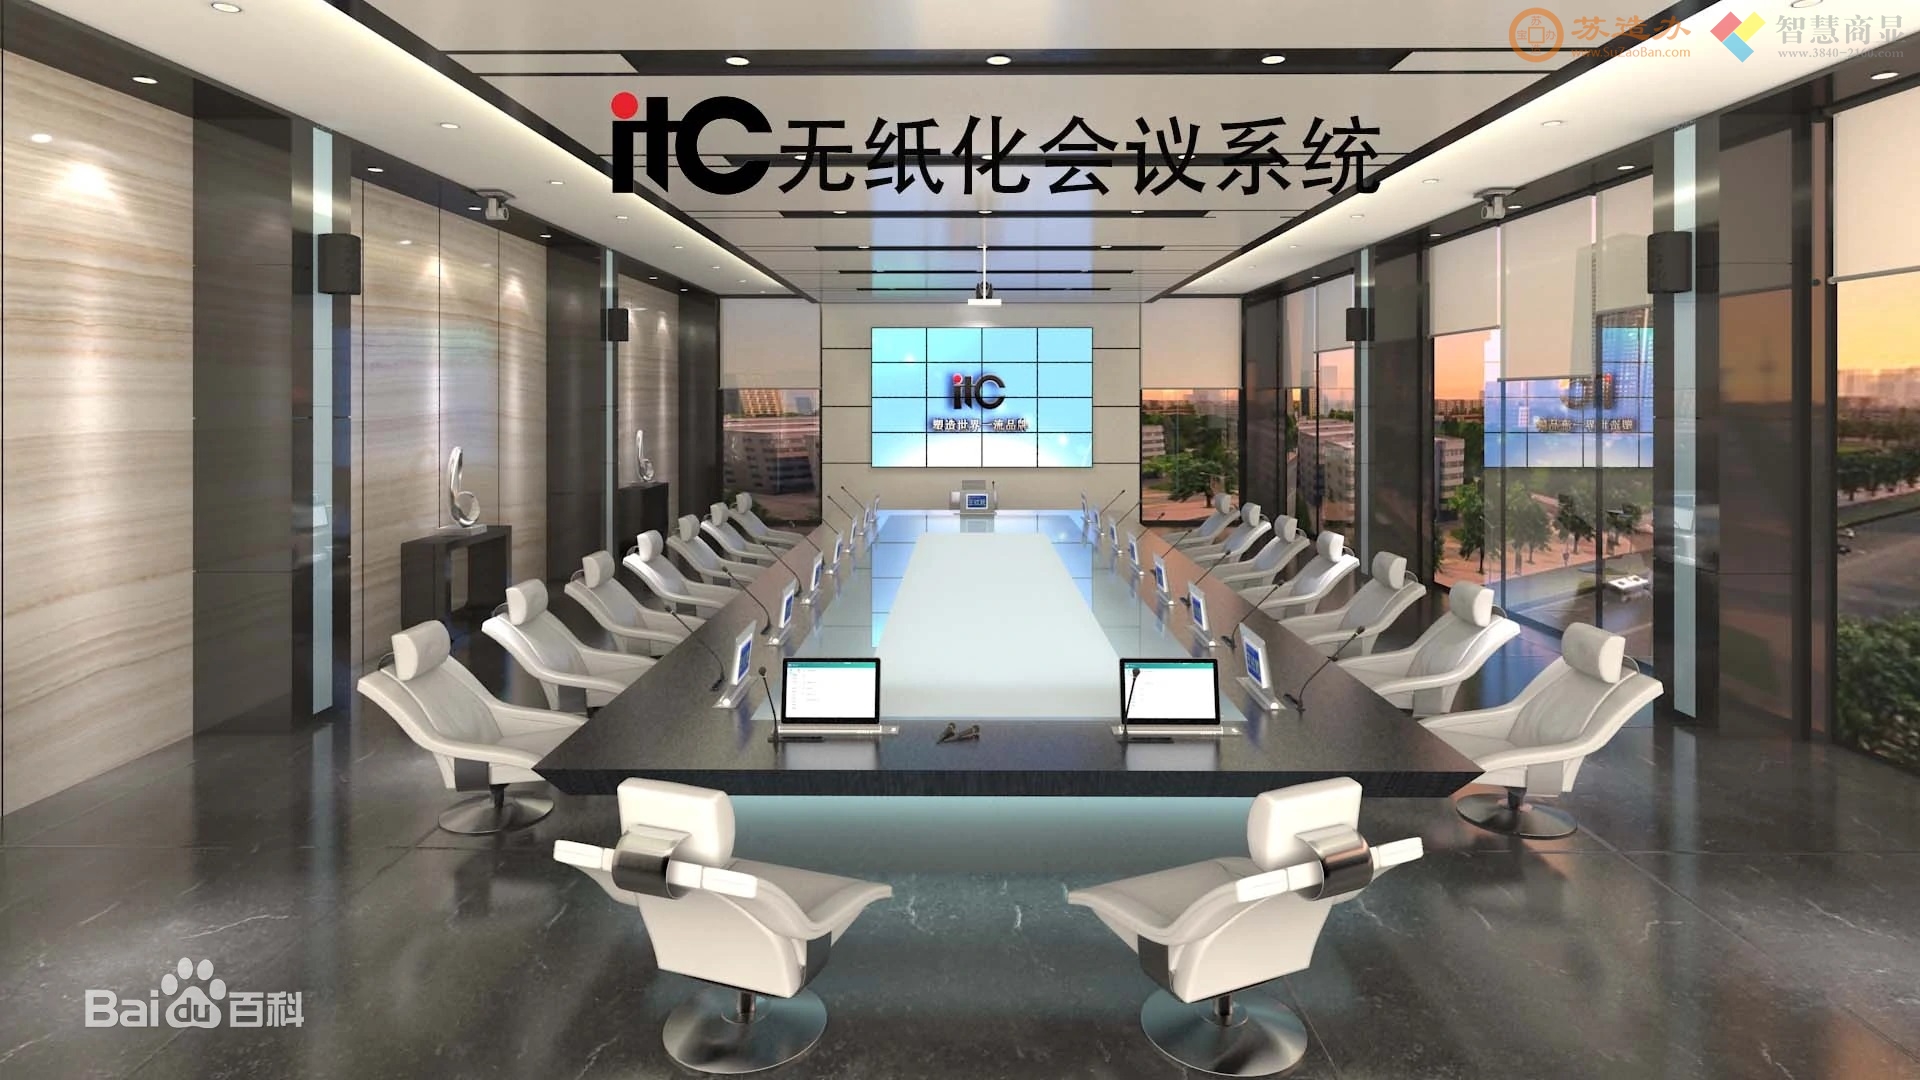 itc无纸化会议系统是广州市保伦电子有限公司（itc）自主研发、生产、设计的一套用于会议交流的系统